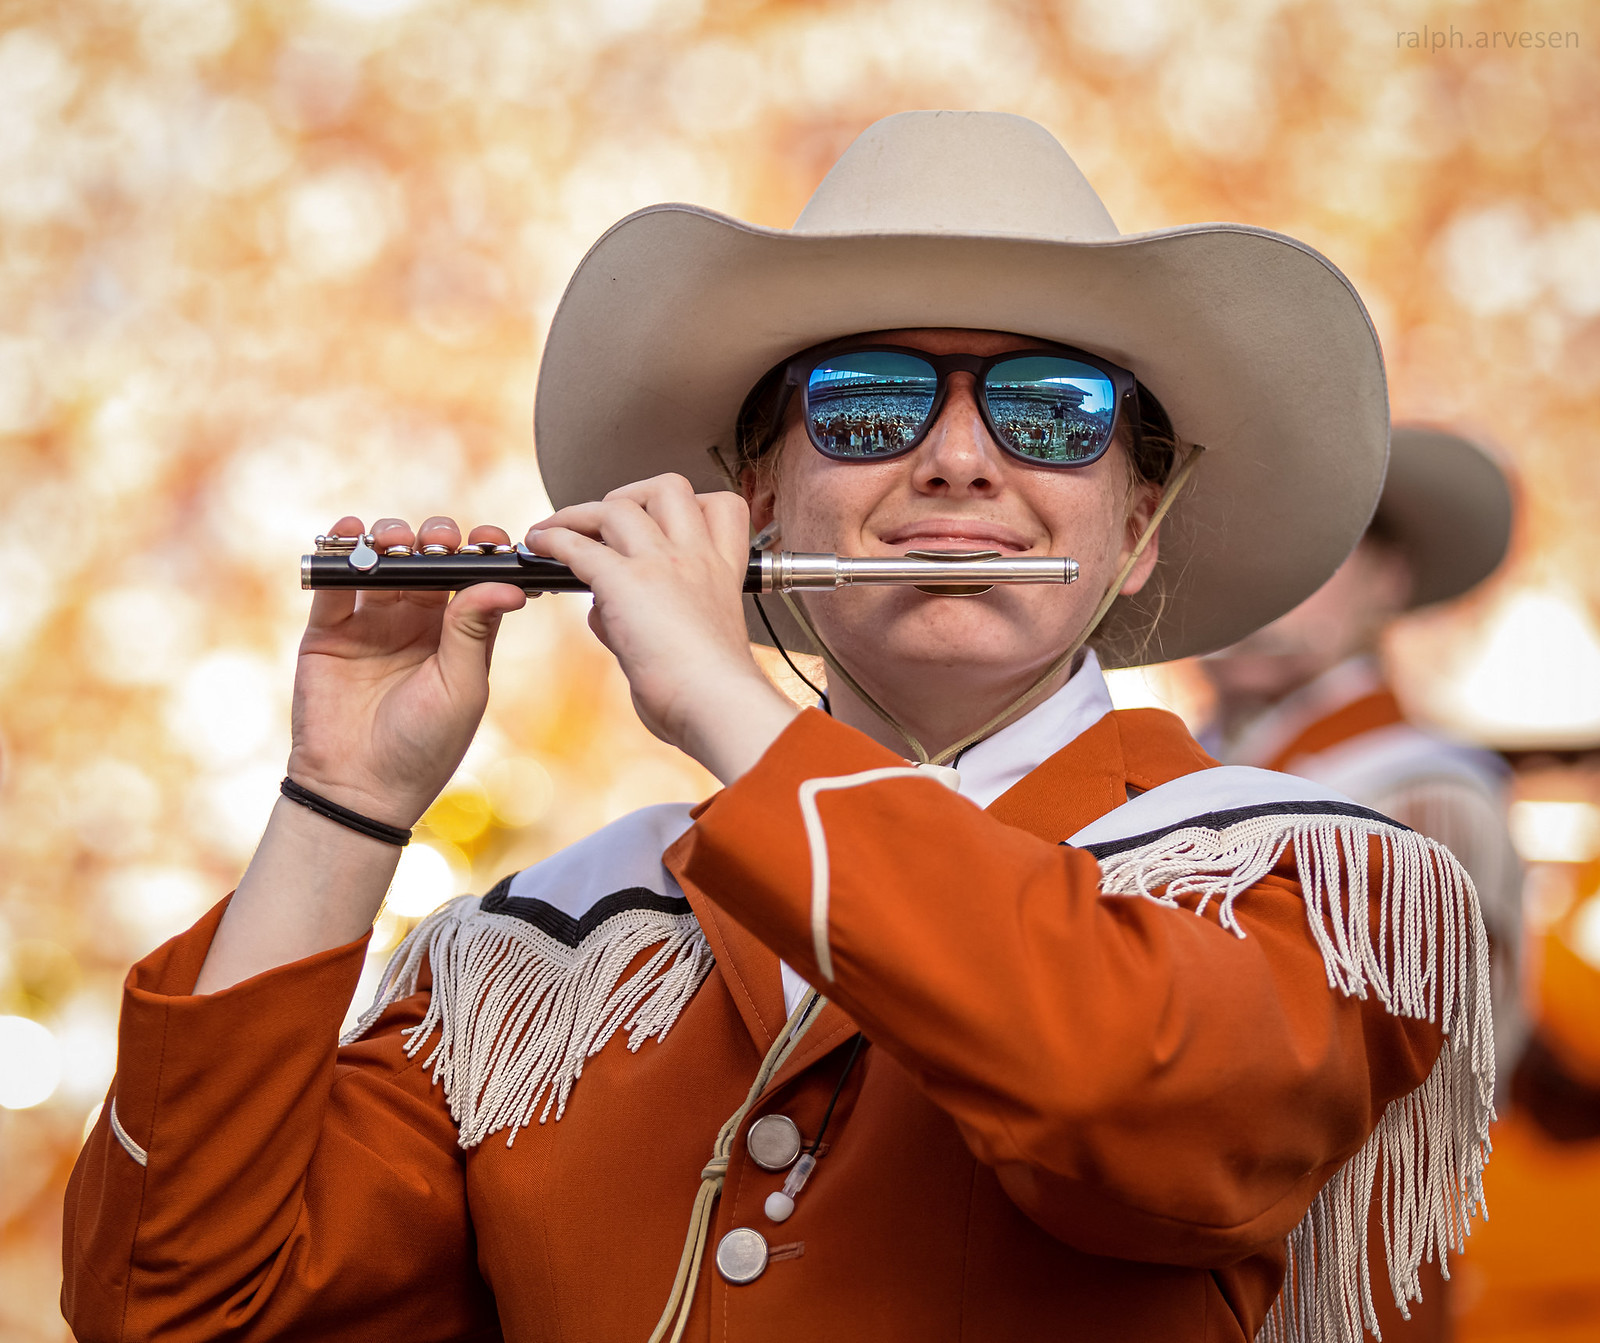 Longhorn Band | Texas Review | Ralph Arvesen